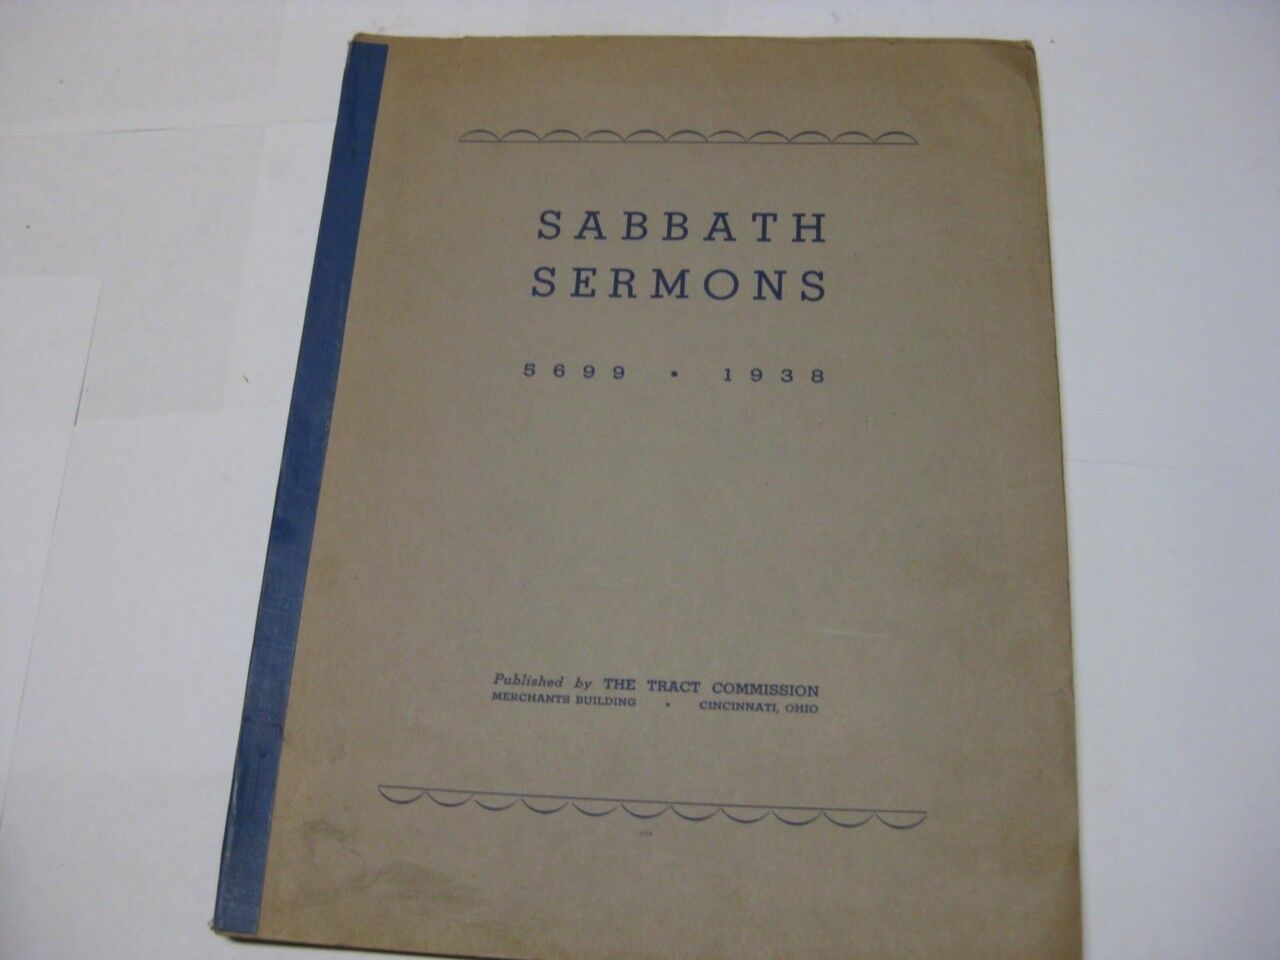 Sabbath sermons, 5699-1938.  by Tract Commission, Cincinnati Ohio RARE